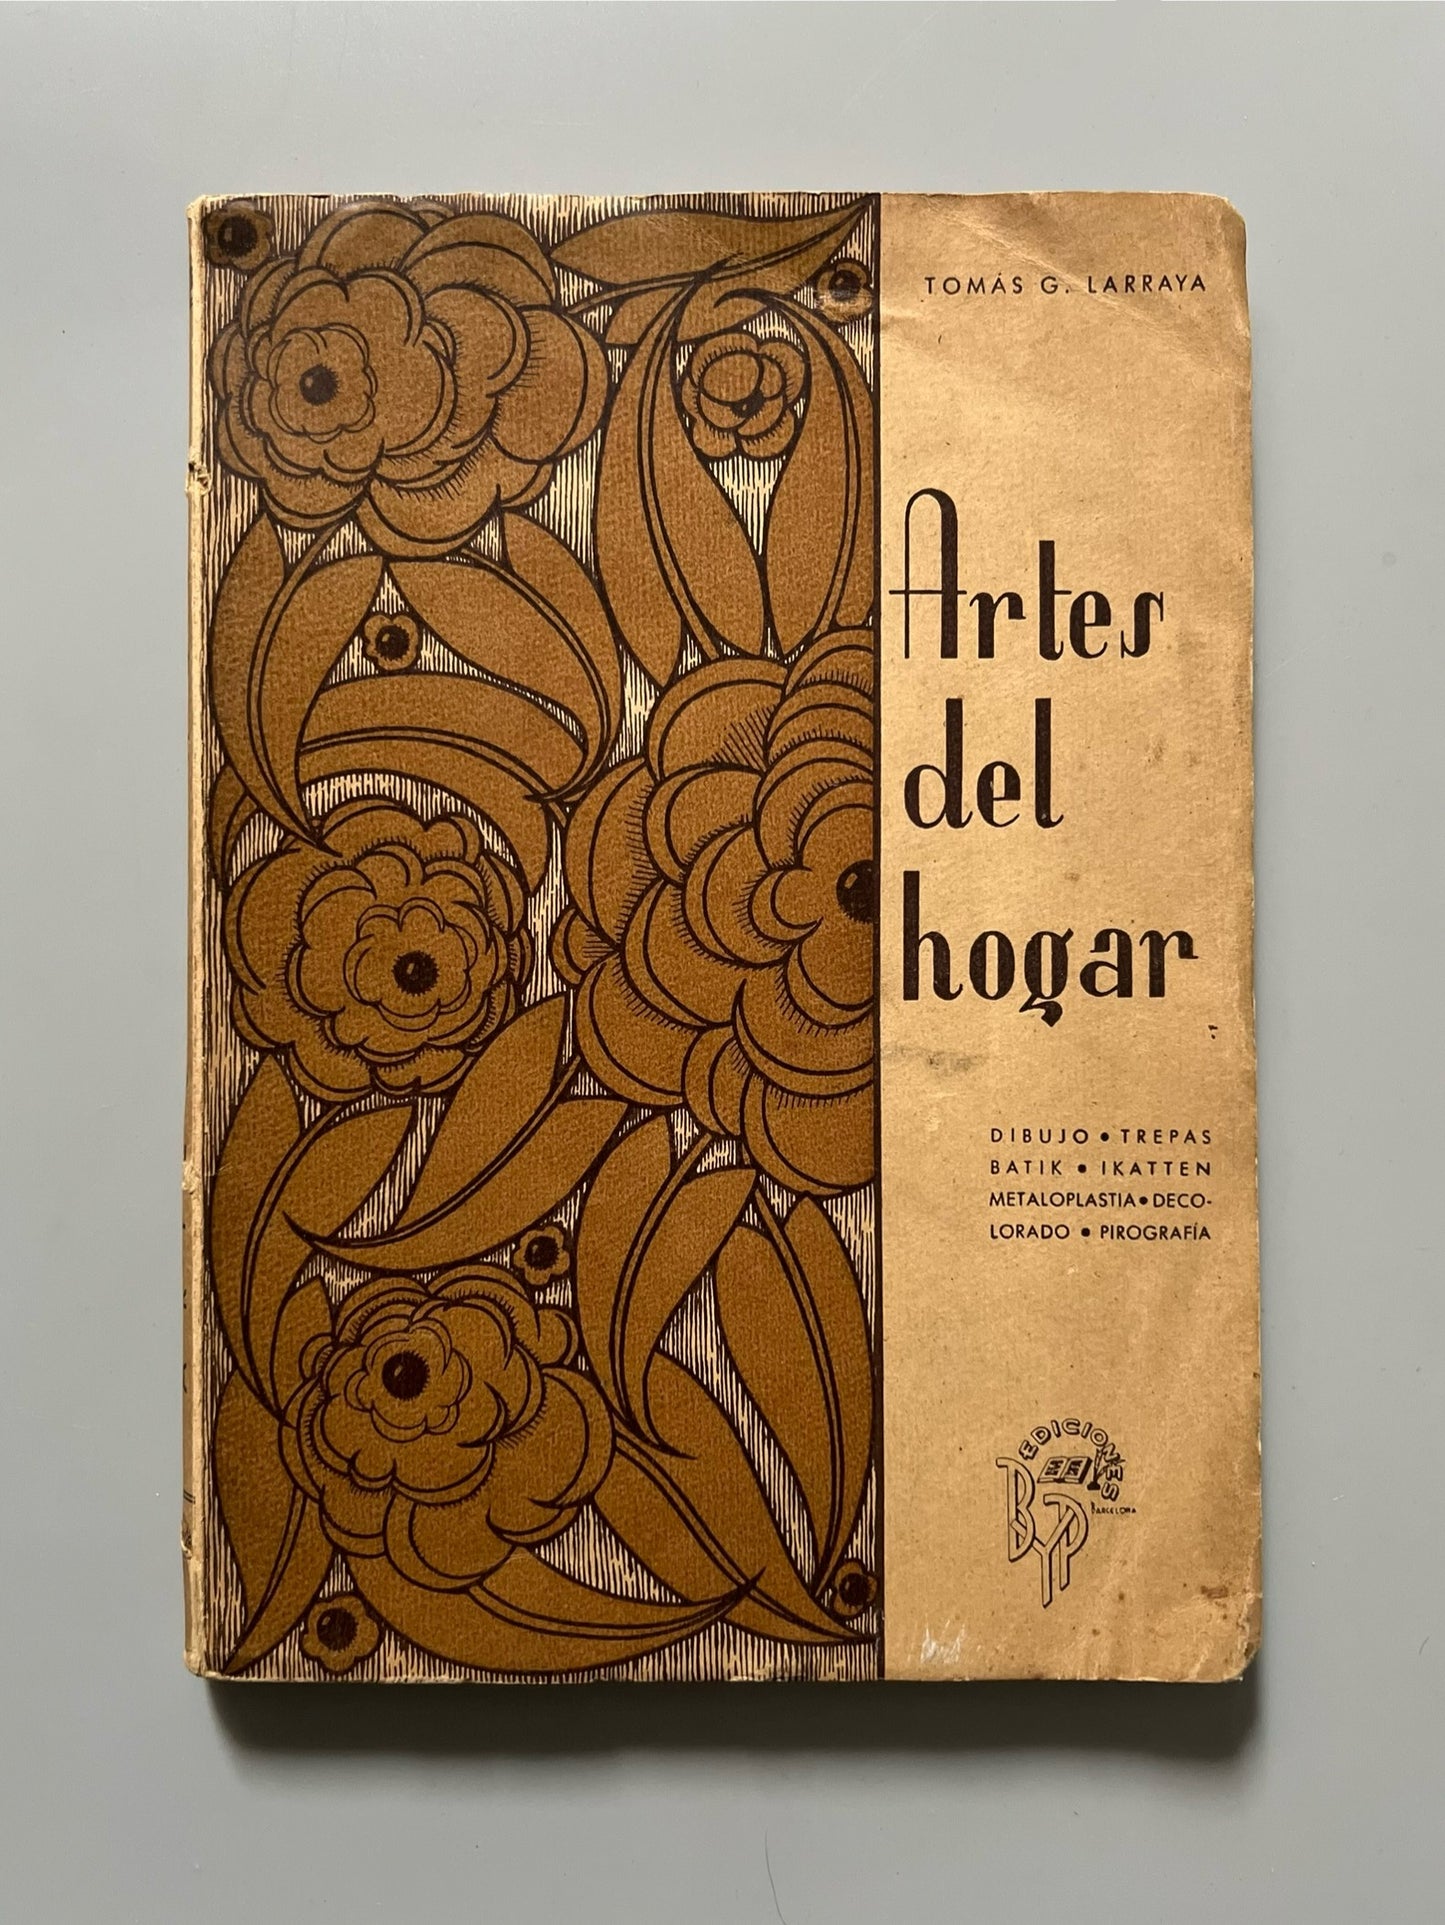 Artes del hogar, Tomás Gutiérrez Larraya - Ediciones BYP, 1942